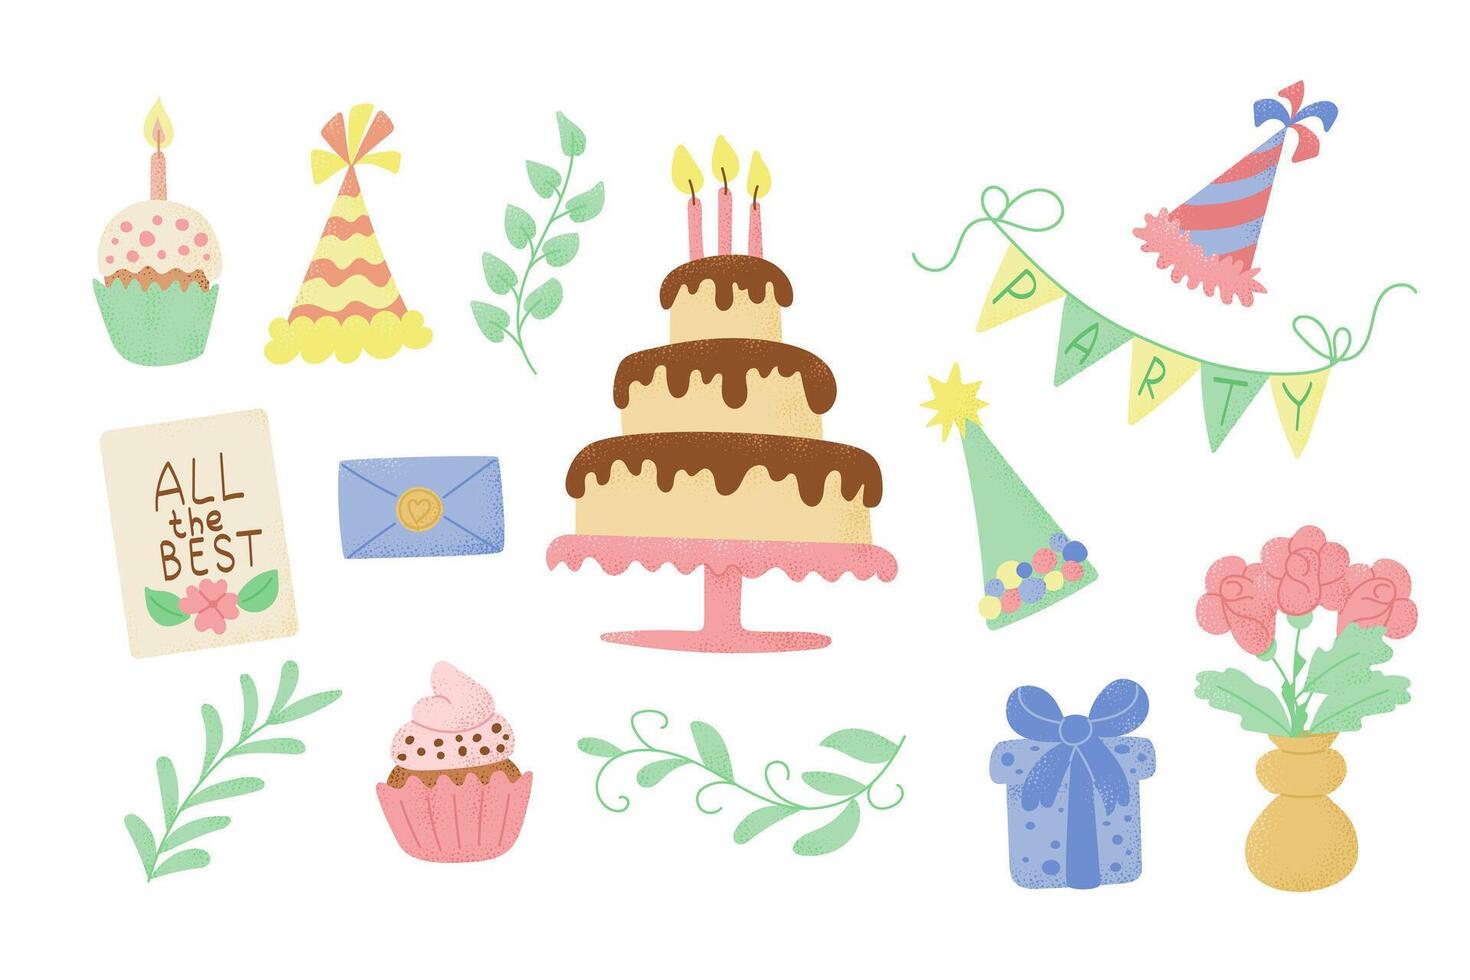 platt födelsedag hand dragen uppsättning av objekt för barn fest med kaka och gåvor. trendig texturerad illustrationer i godis pastell färger isolerat på vit bakgrund vektor